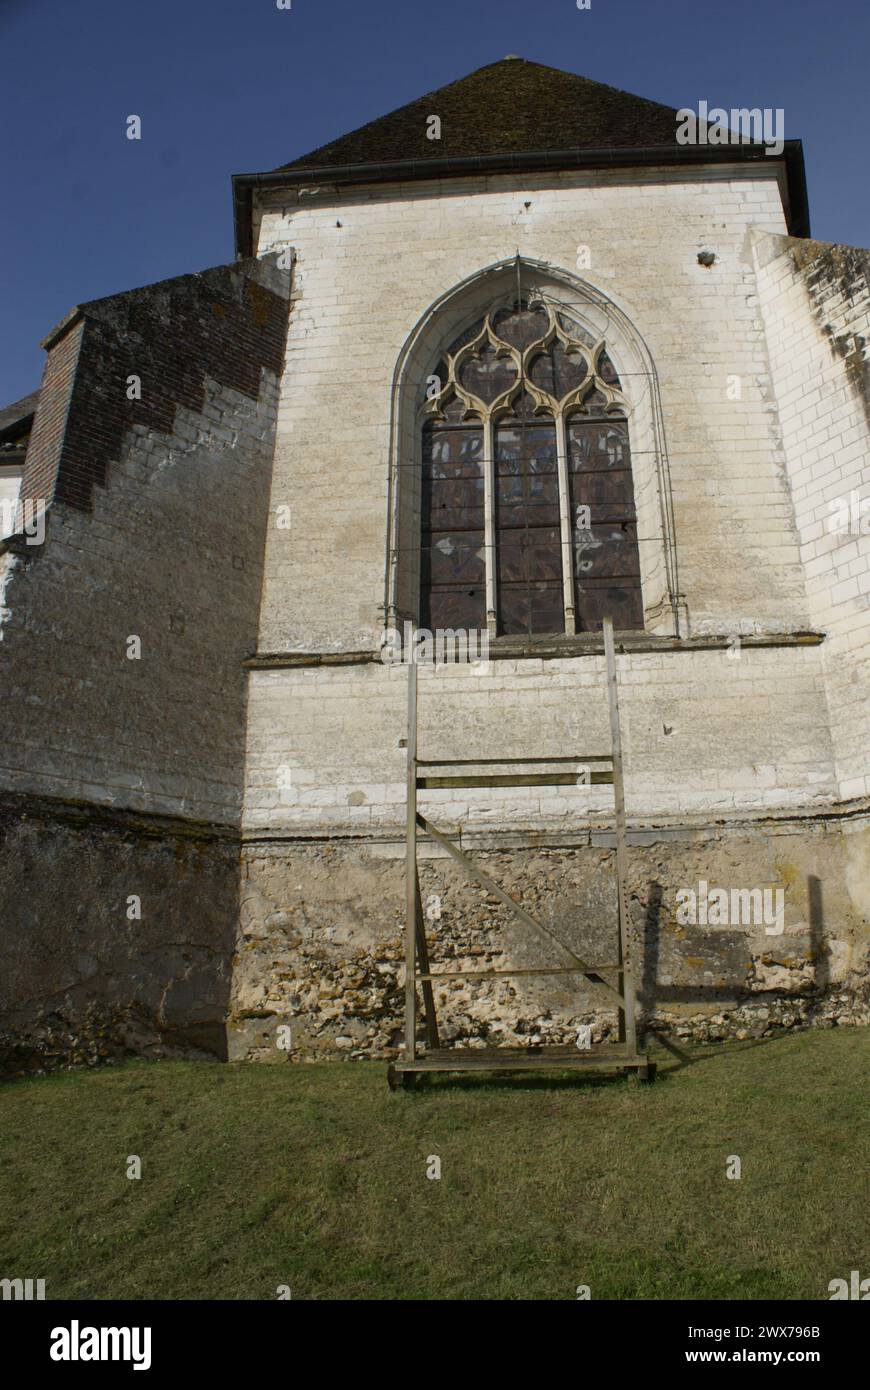 Église Saint-Pierre-aux-liens de Sormery est une église située à Sormery, dans le département francese de l'Yonne, en France. Foto Stock